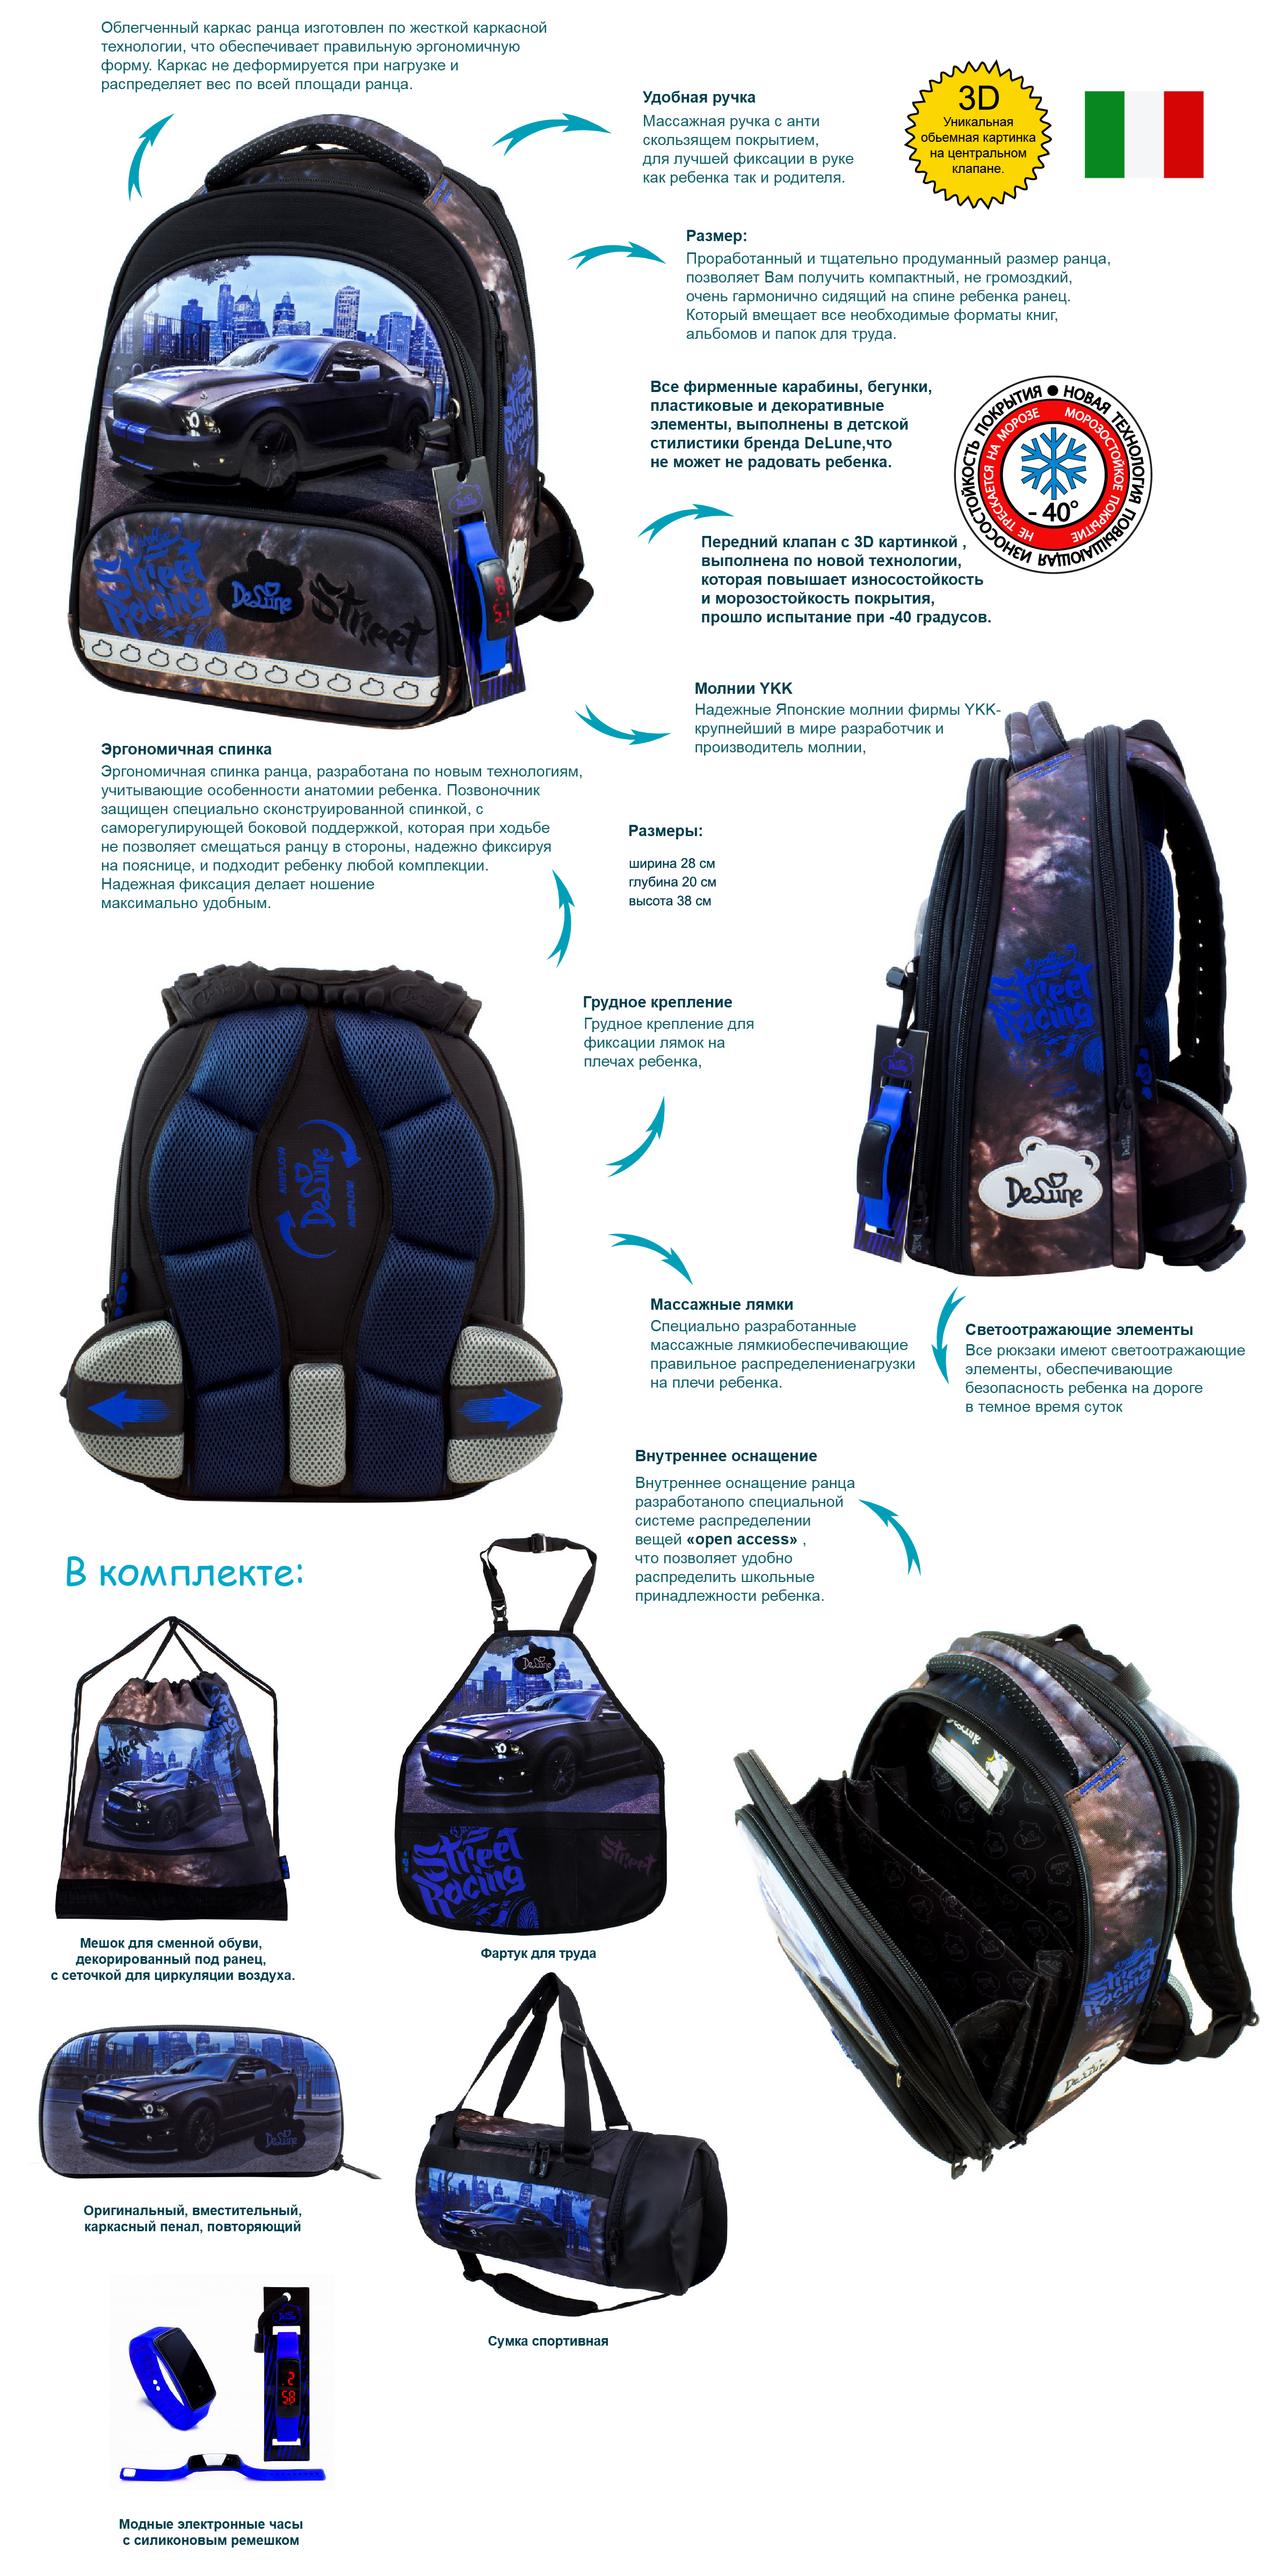 Обзор Ранец DeLune Full-set 9-130 + мешок + жесткий пенал + спортивная сумка + фартук для труда + часы